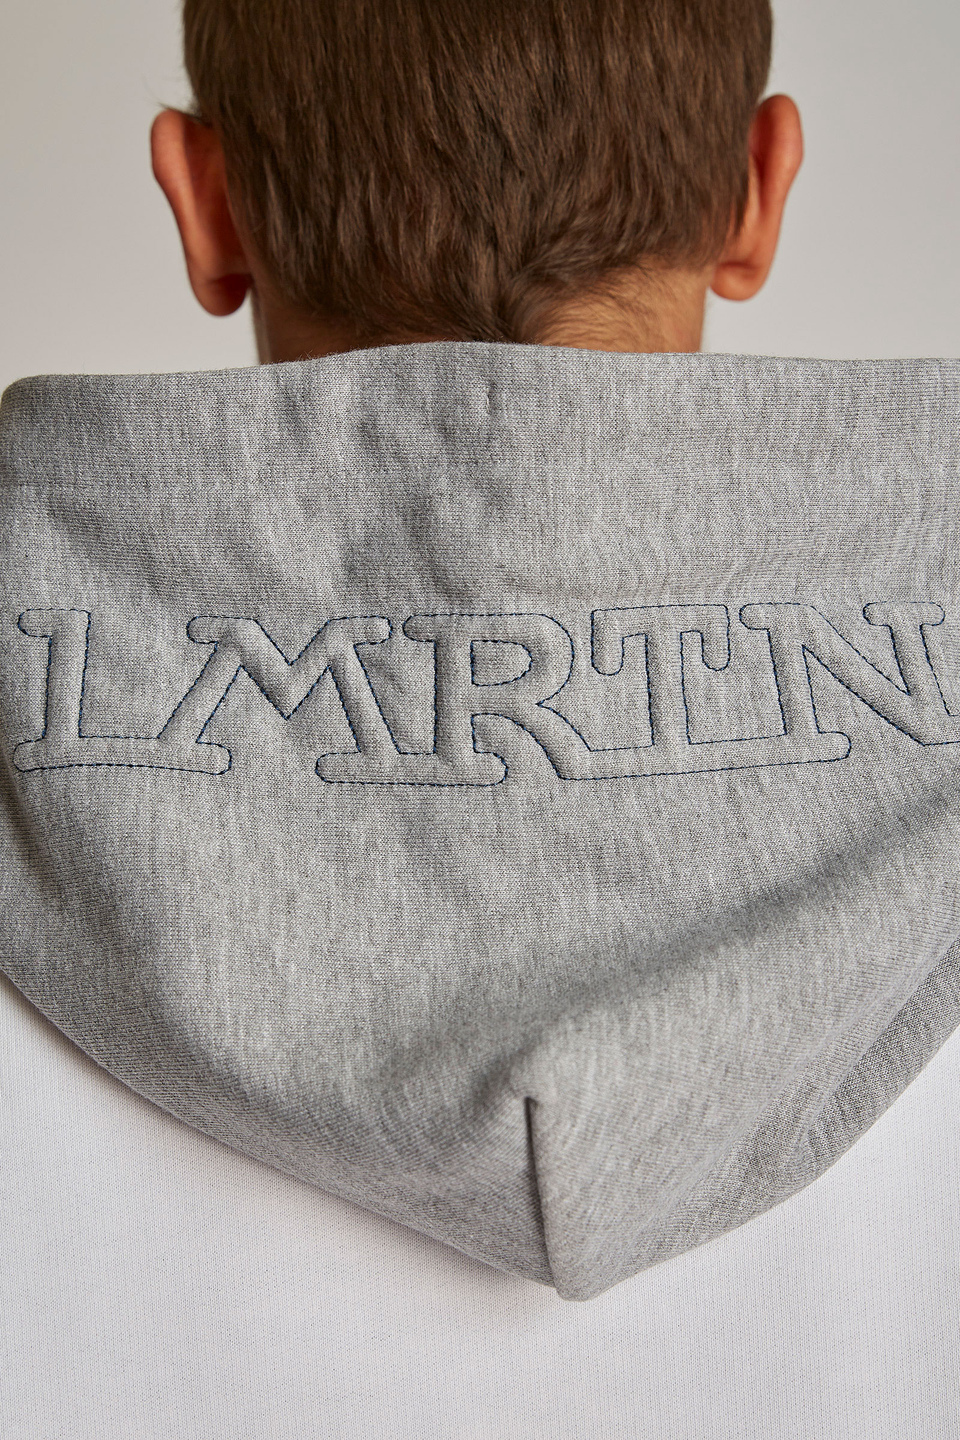 Sudadera de hombre de algodón 100 % con capucha en contraste, modelo oversize | La Martina - Official Online Shop